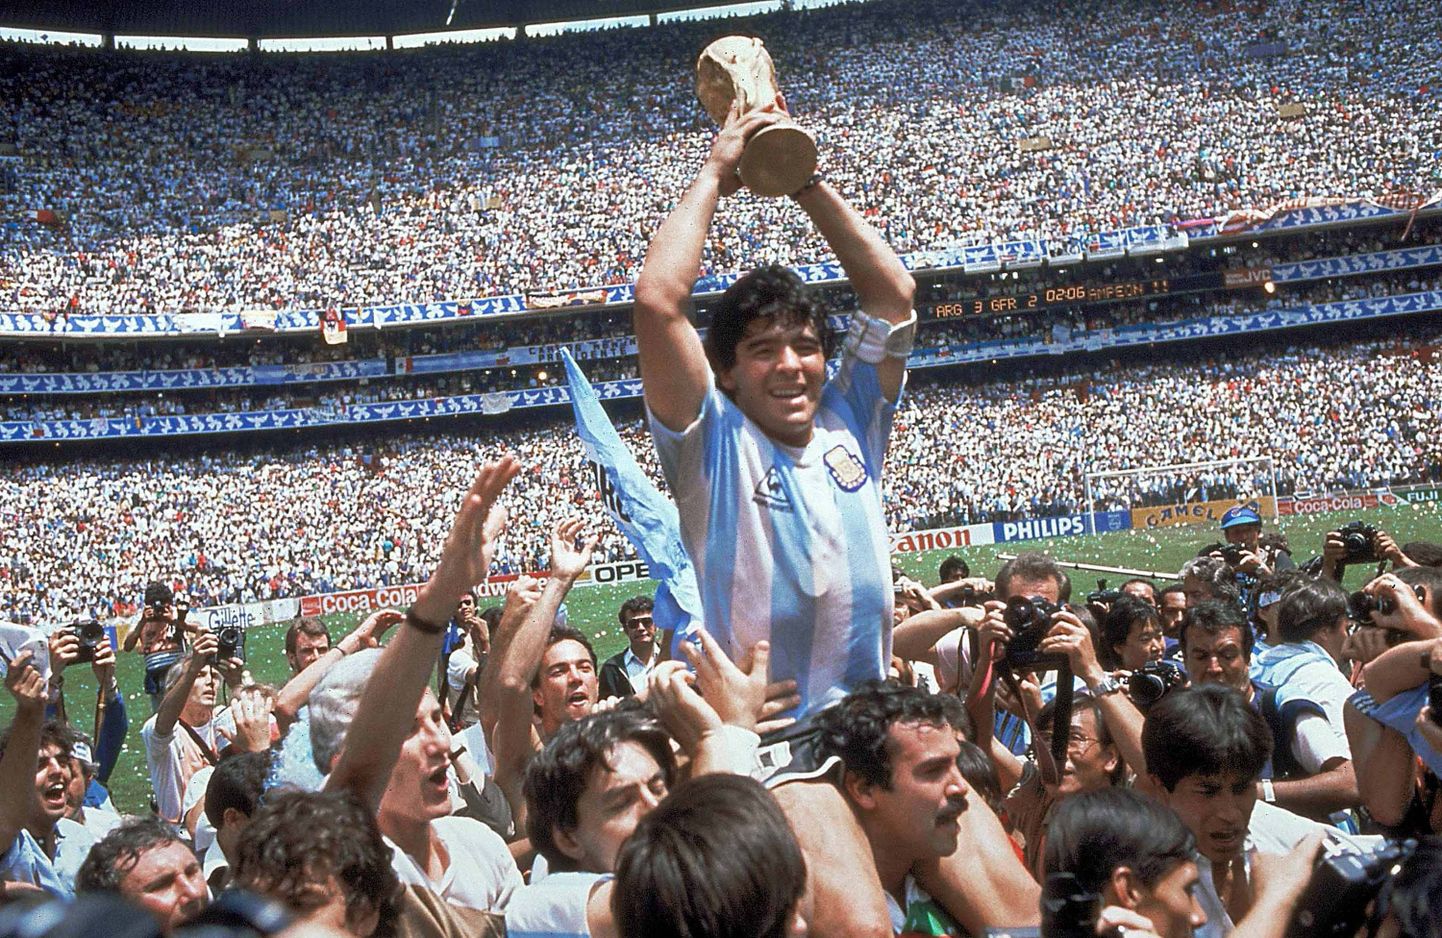 Põnev: mis on ühist Lionel Messi eilsel ja Diego Maradona 1986. aasta penaltieksimusel?